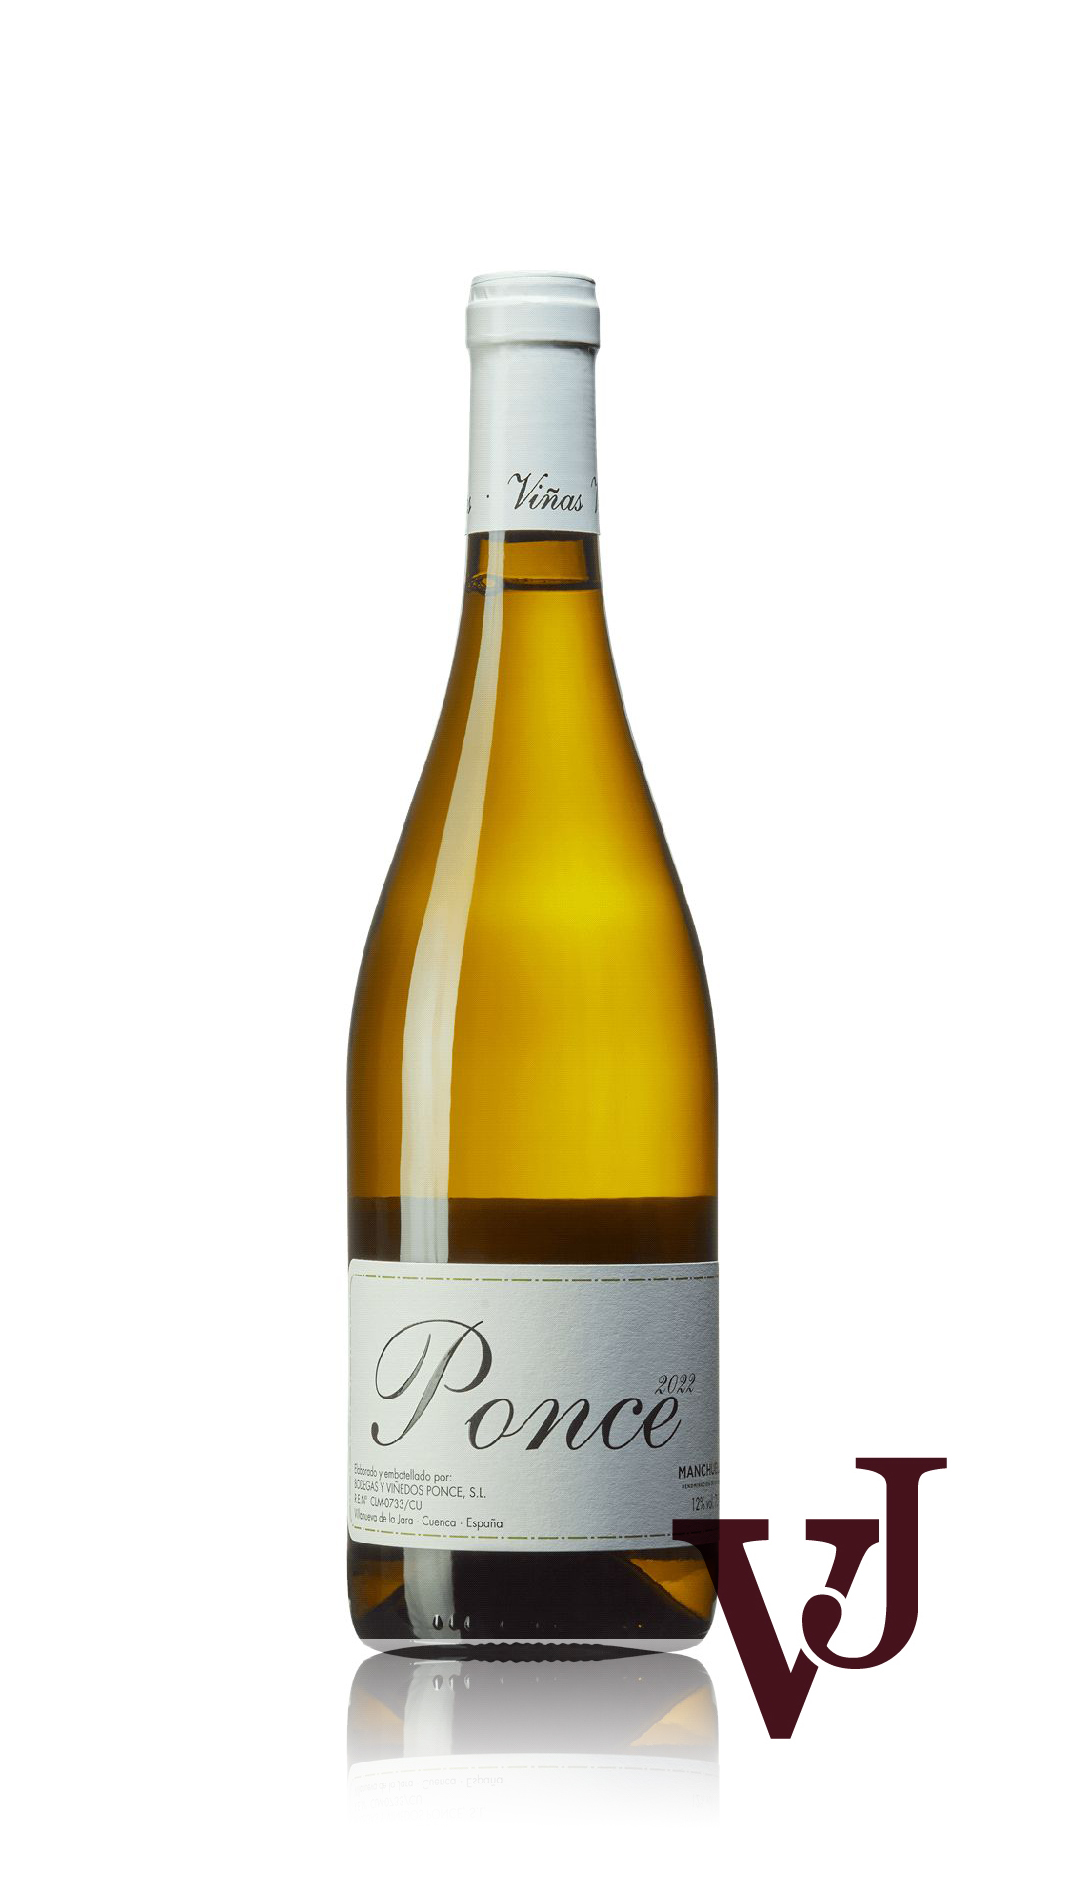 Vitt Vin - Ponce Blanco artikel nummer 9243801 från producenten Bodegas y Viñedos Ponce från Spanien